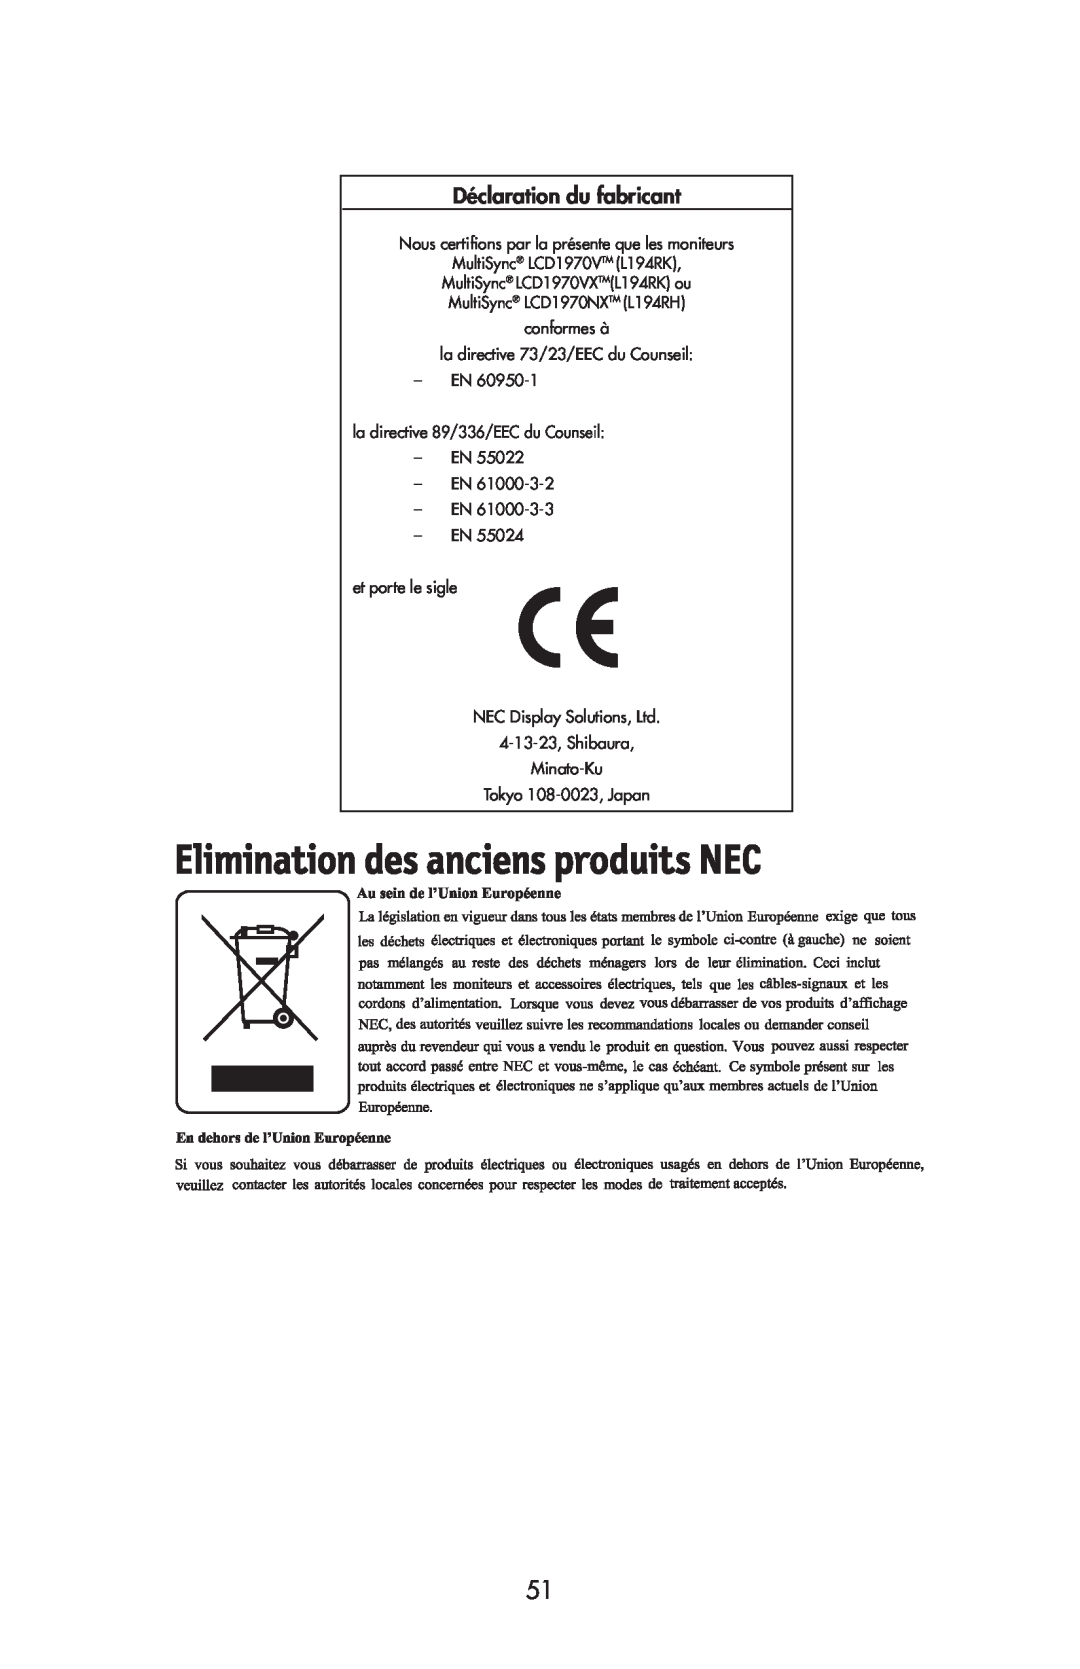 NEC LCD1970V Déclaration du fabricant, Nous certiﬁons par la présente que les moniteurs, EN -EN et porte le sigle 